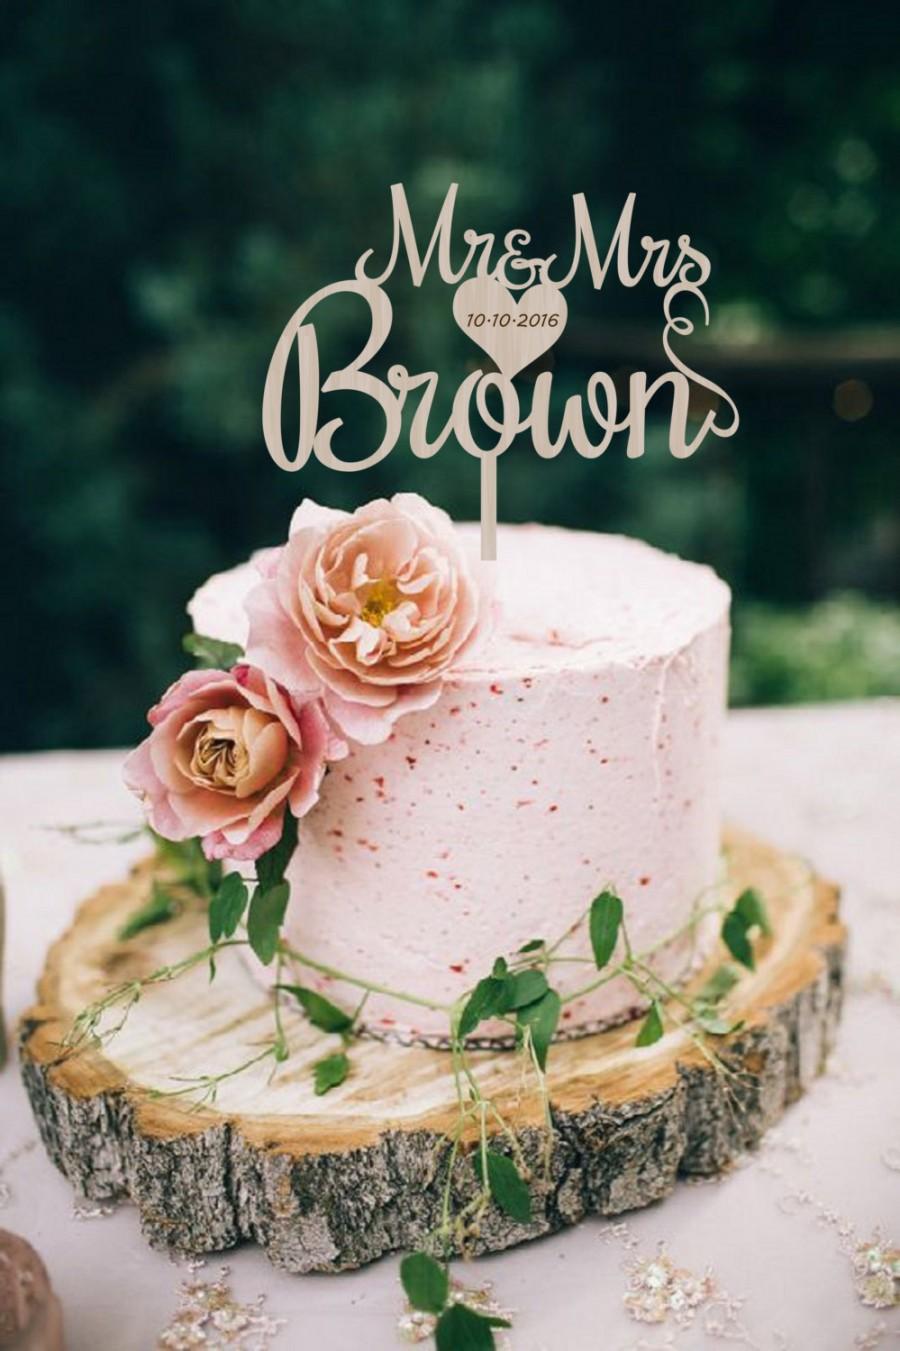 زفاف - Wedding Cake Topper Mr & Mrs Surname Wedding Cake Topper Golden  Custom Cake Topper  Personalized  Wood Cake Topper